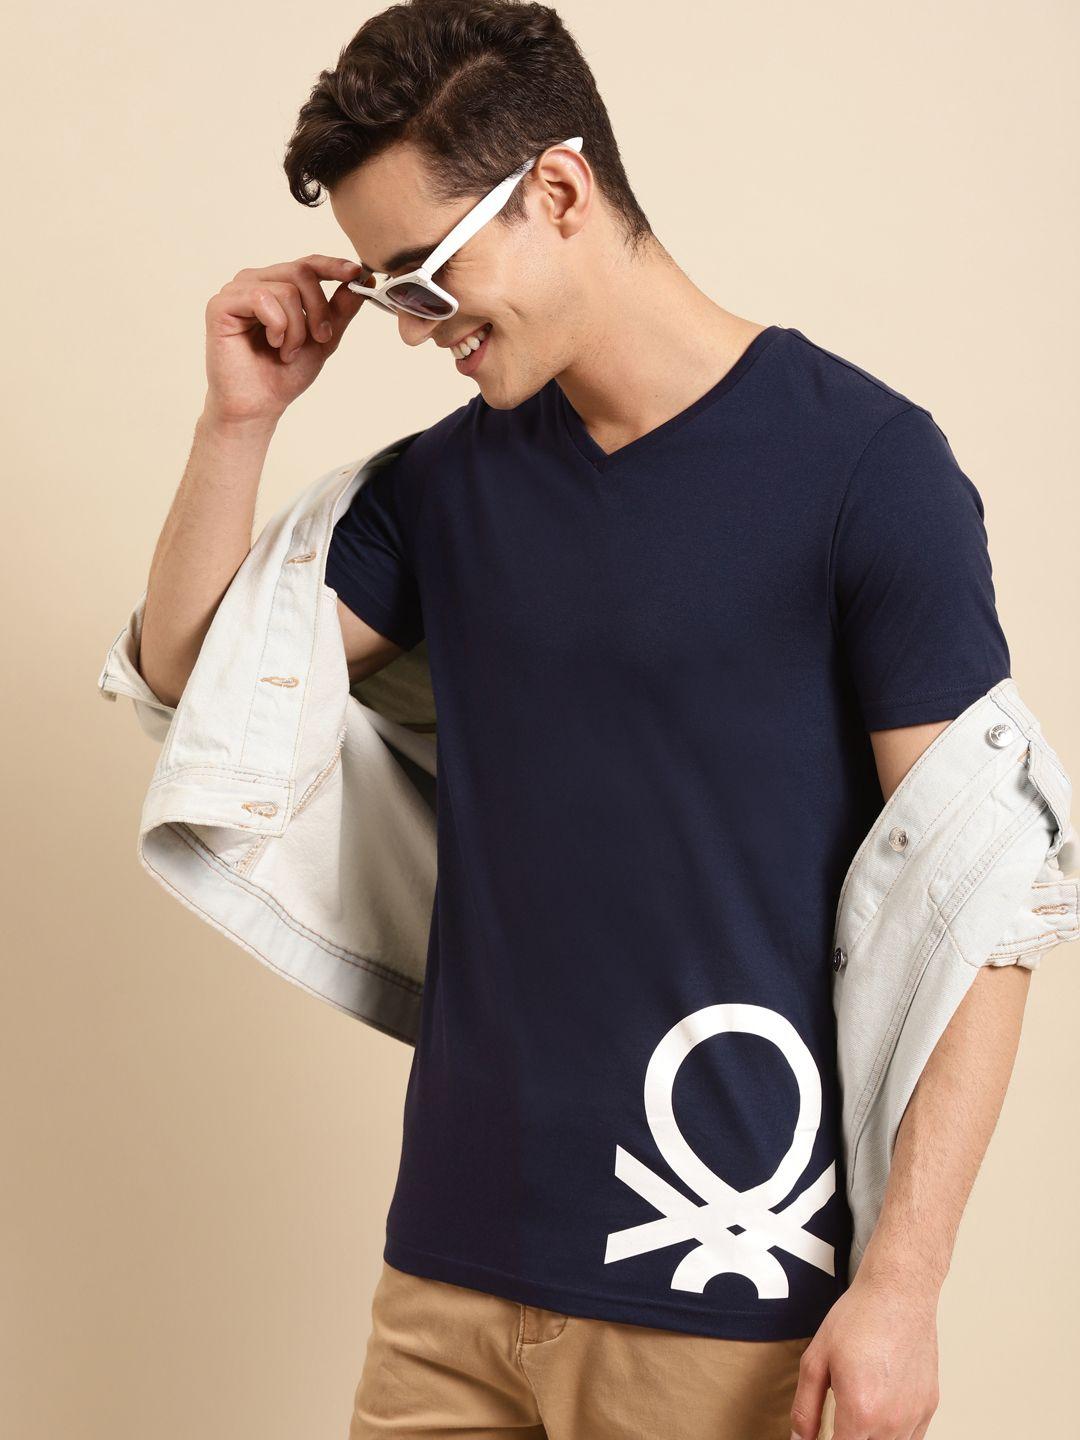 united colors of benetton men navy blue & white brand logo printed v-neck t-shirt